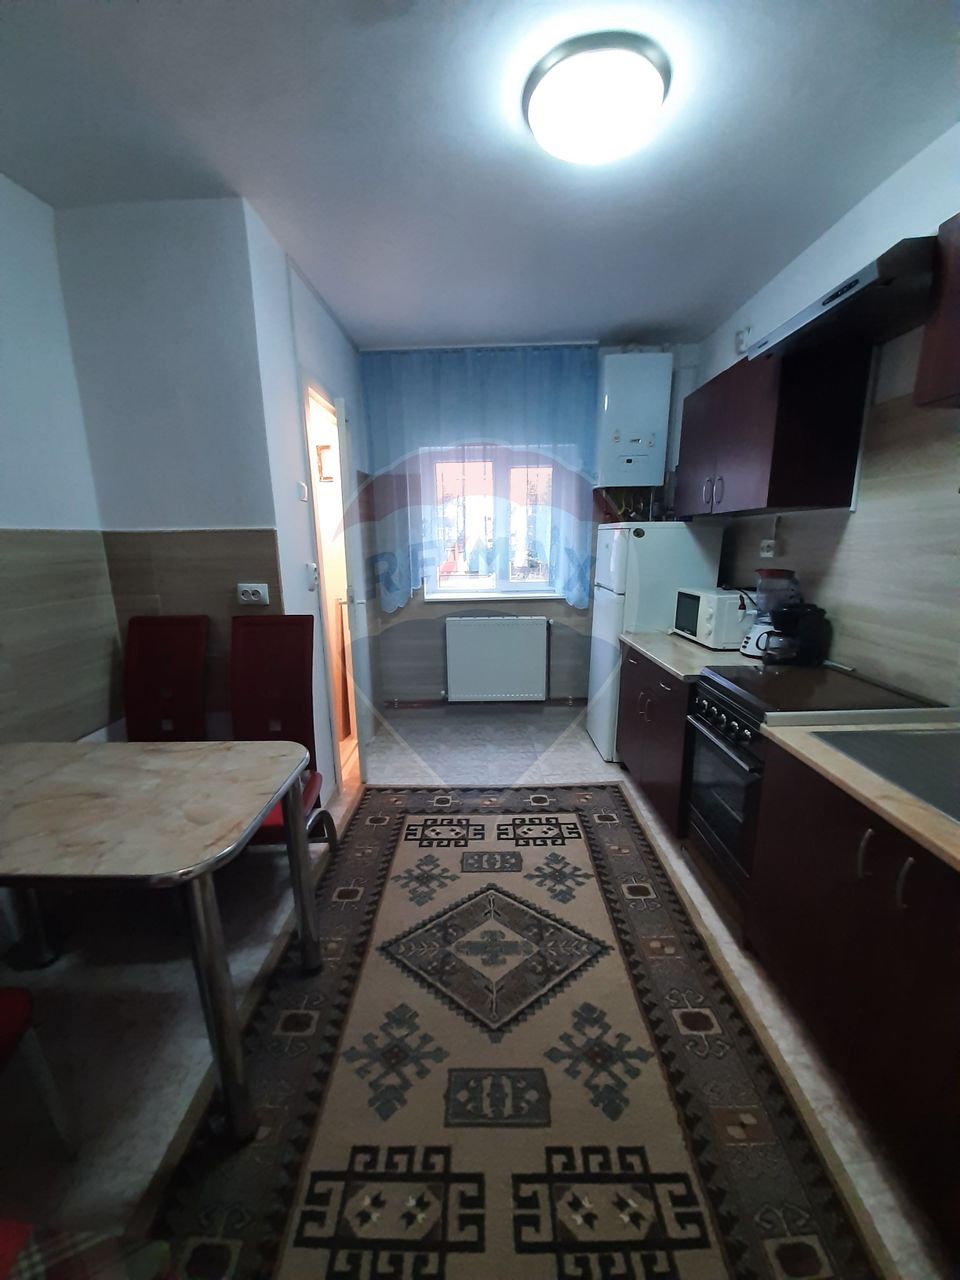 Apartament cu 2 camere pe Titulescu